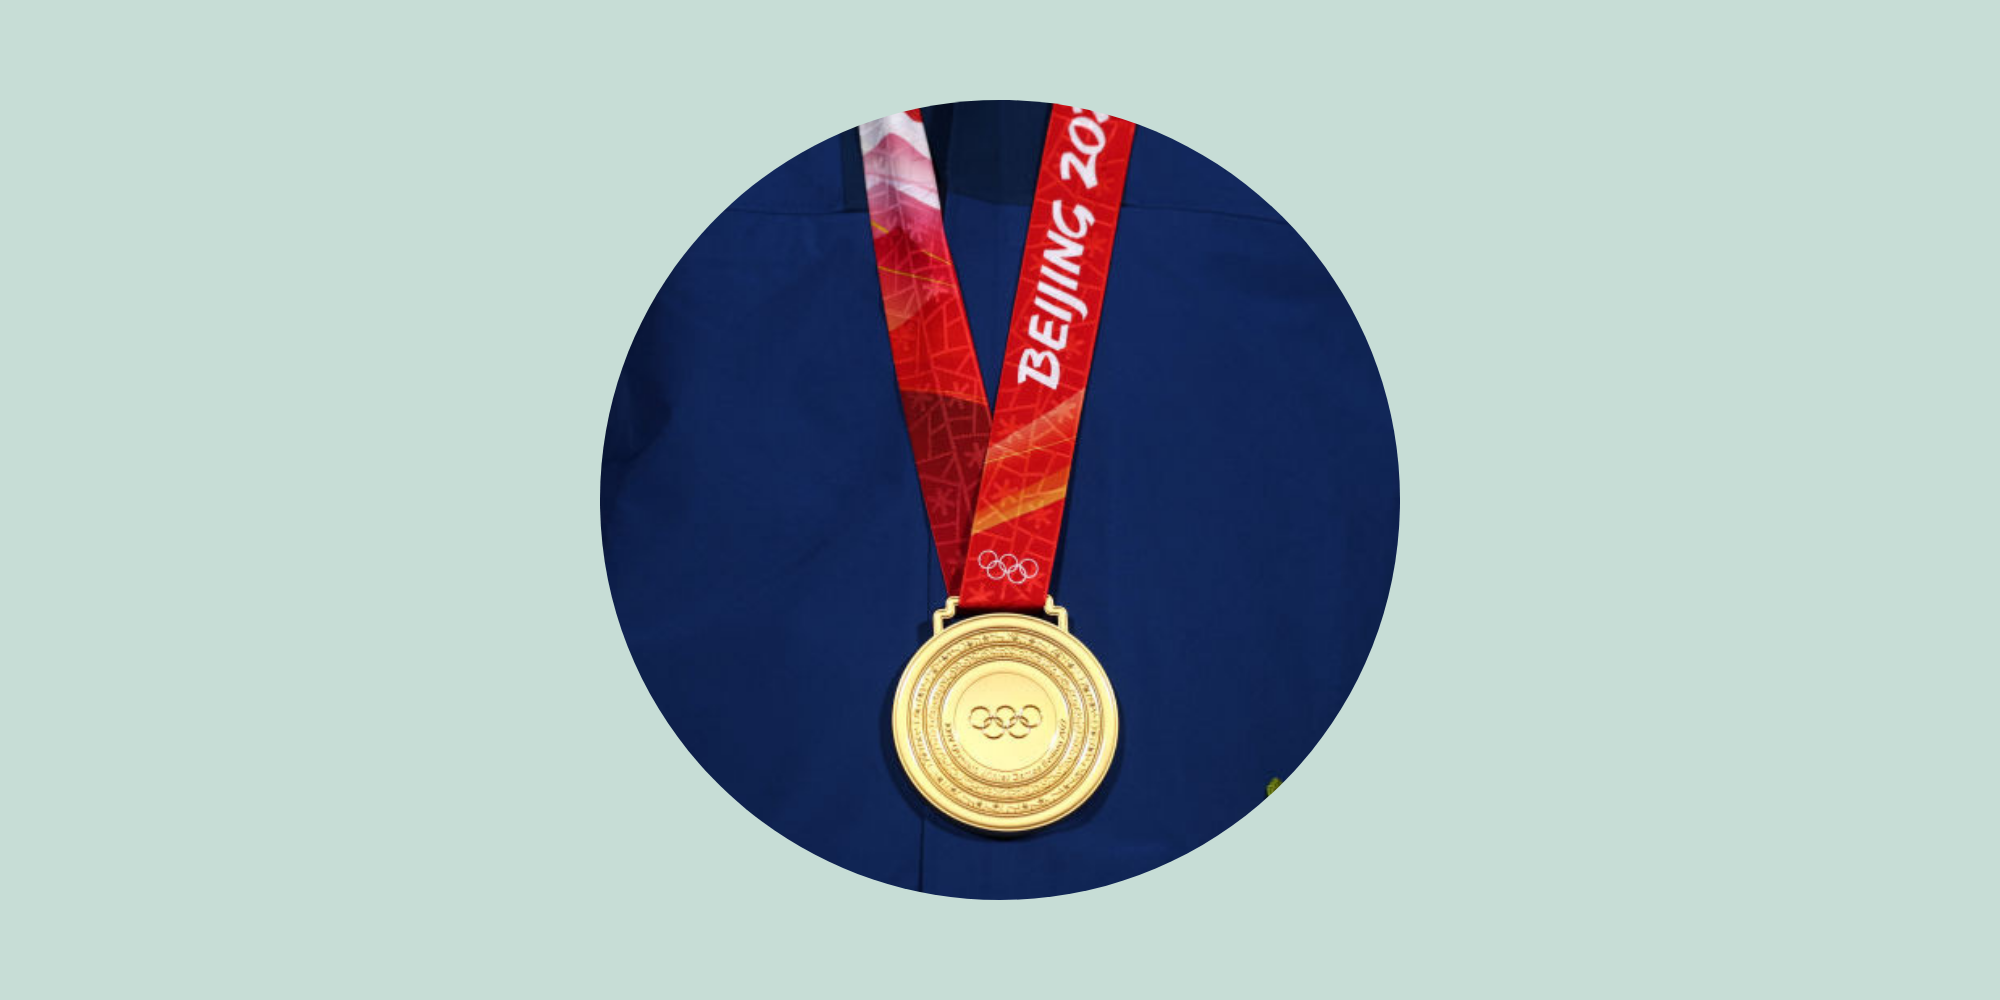 ほとんど銀でできている オリンピックの 金メダル の秘密